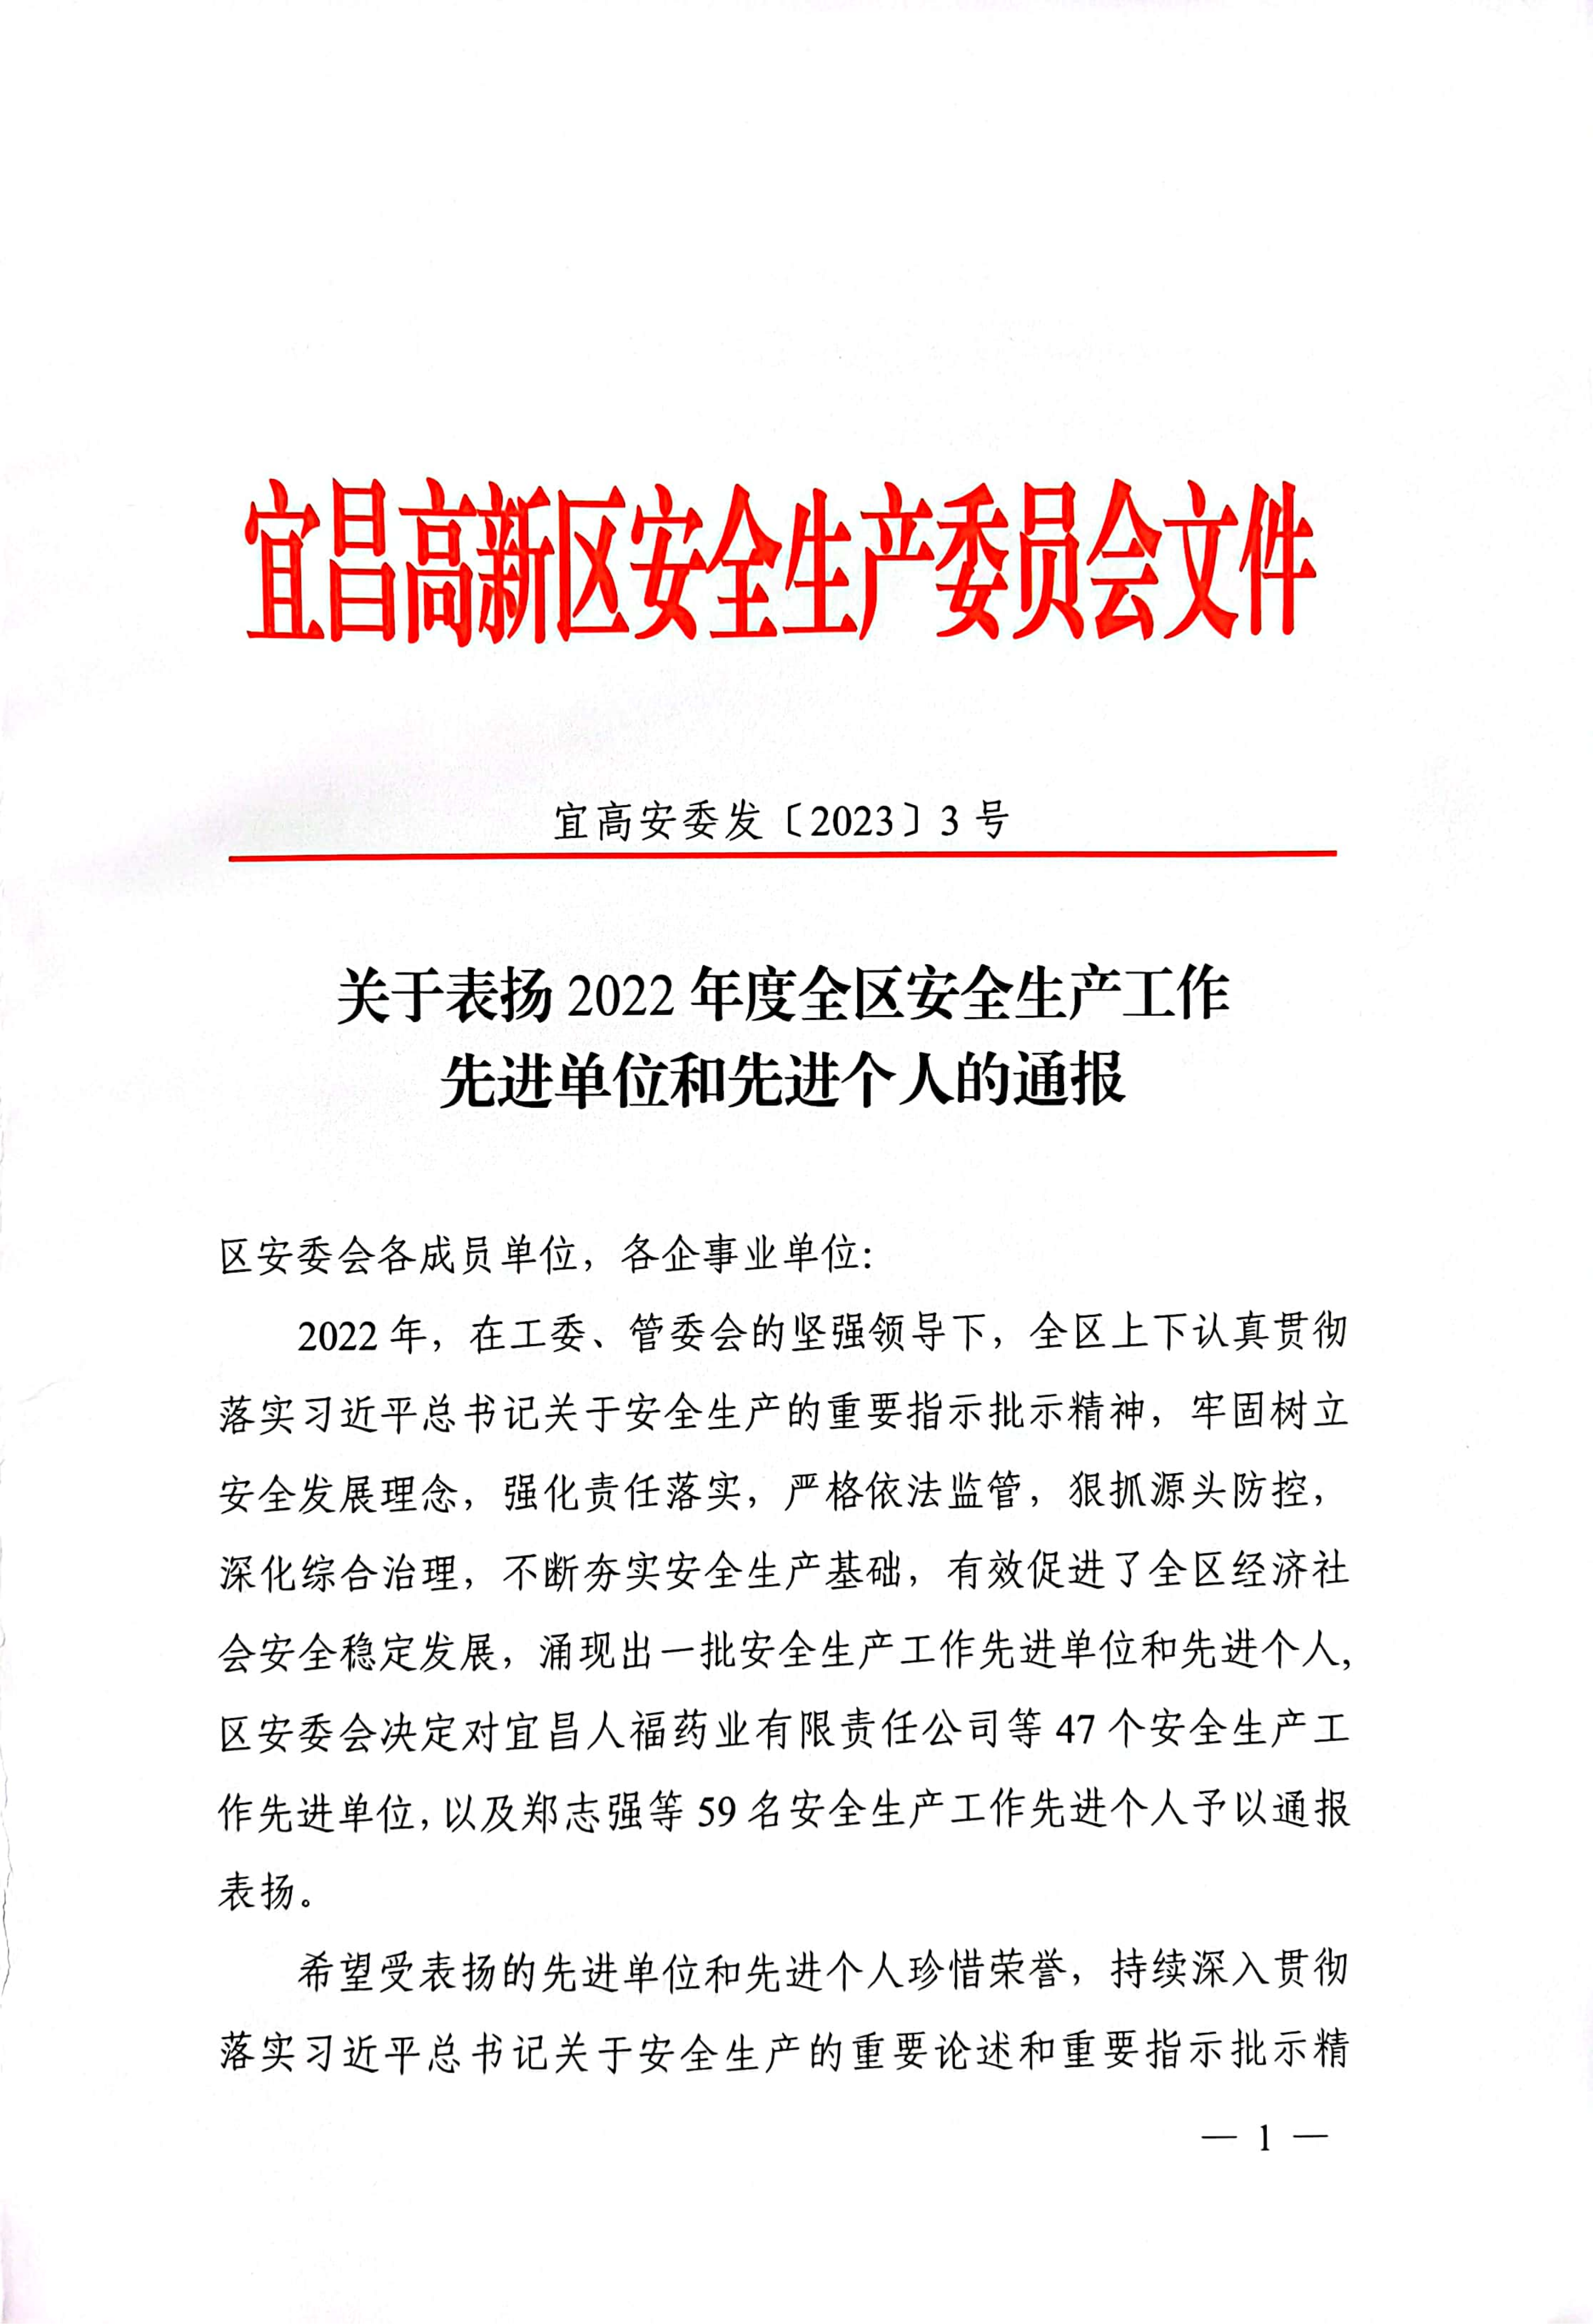 周泽红同志被评为“2022年度高新区安全生产工作先进个人”